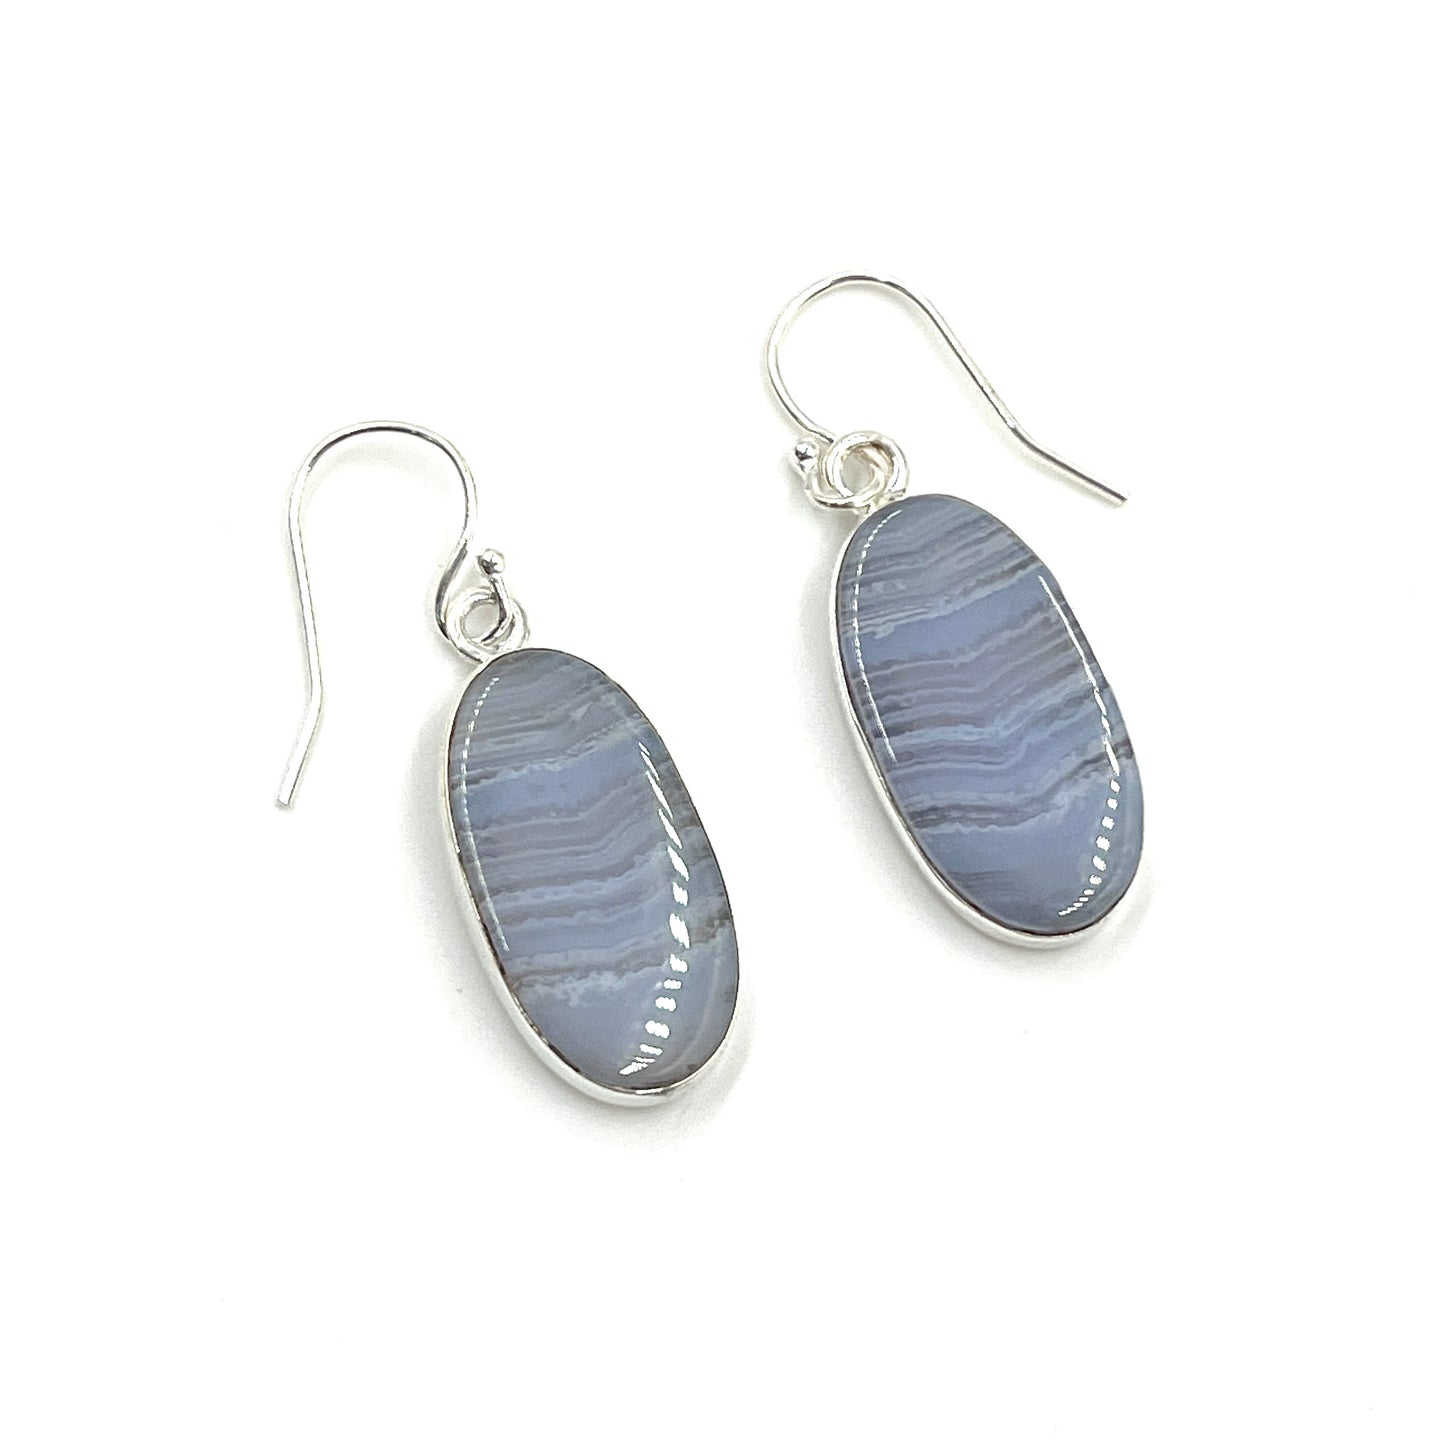 Oval Blue Lace Agate Earrings